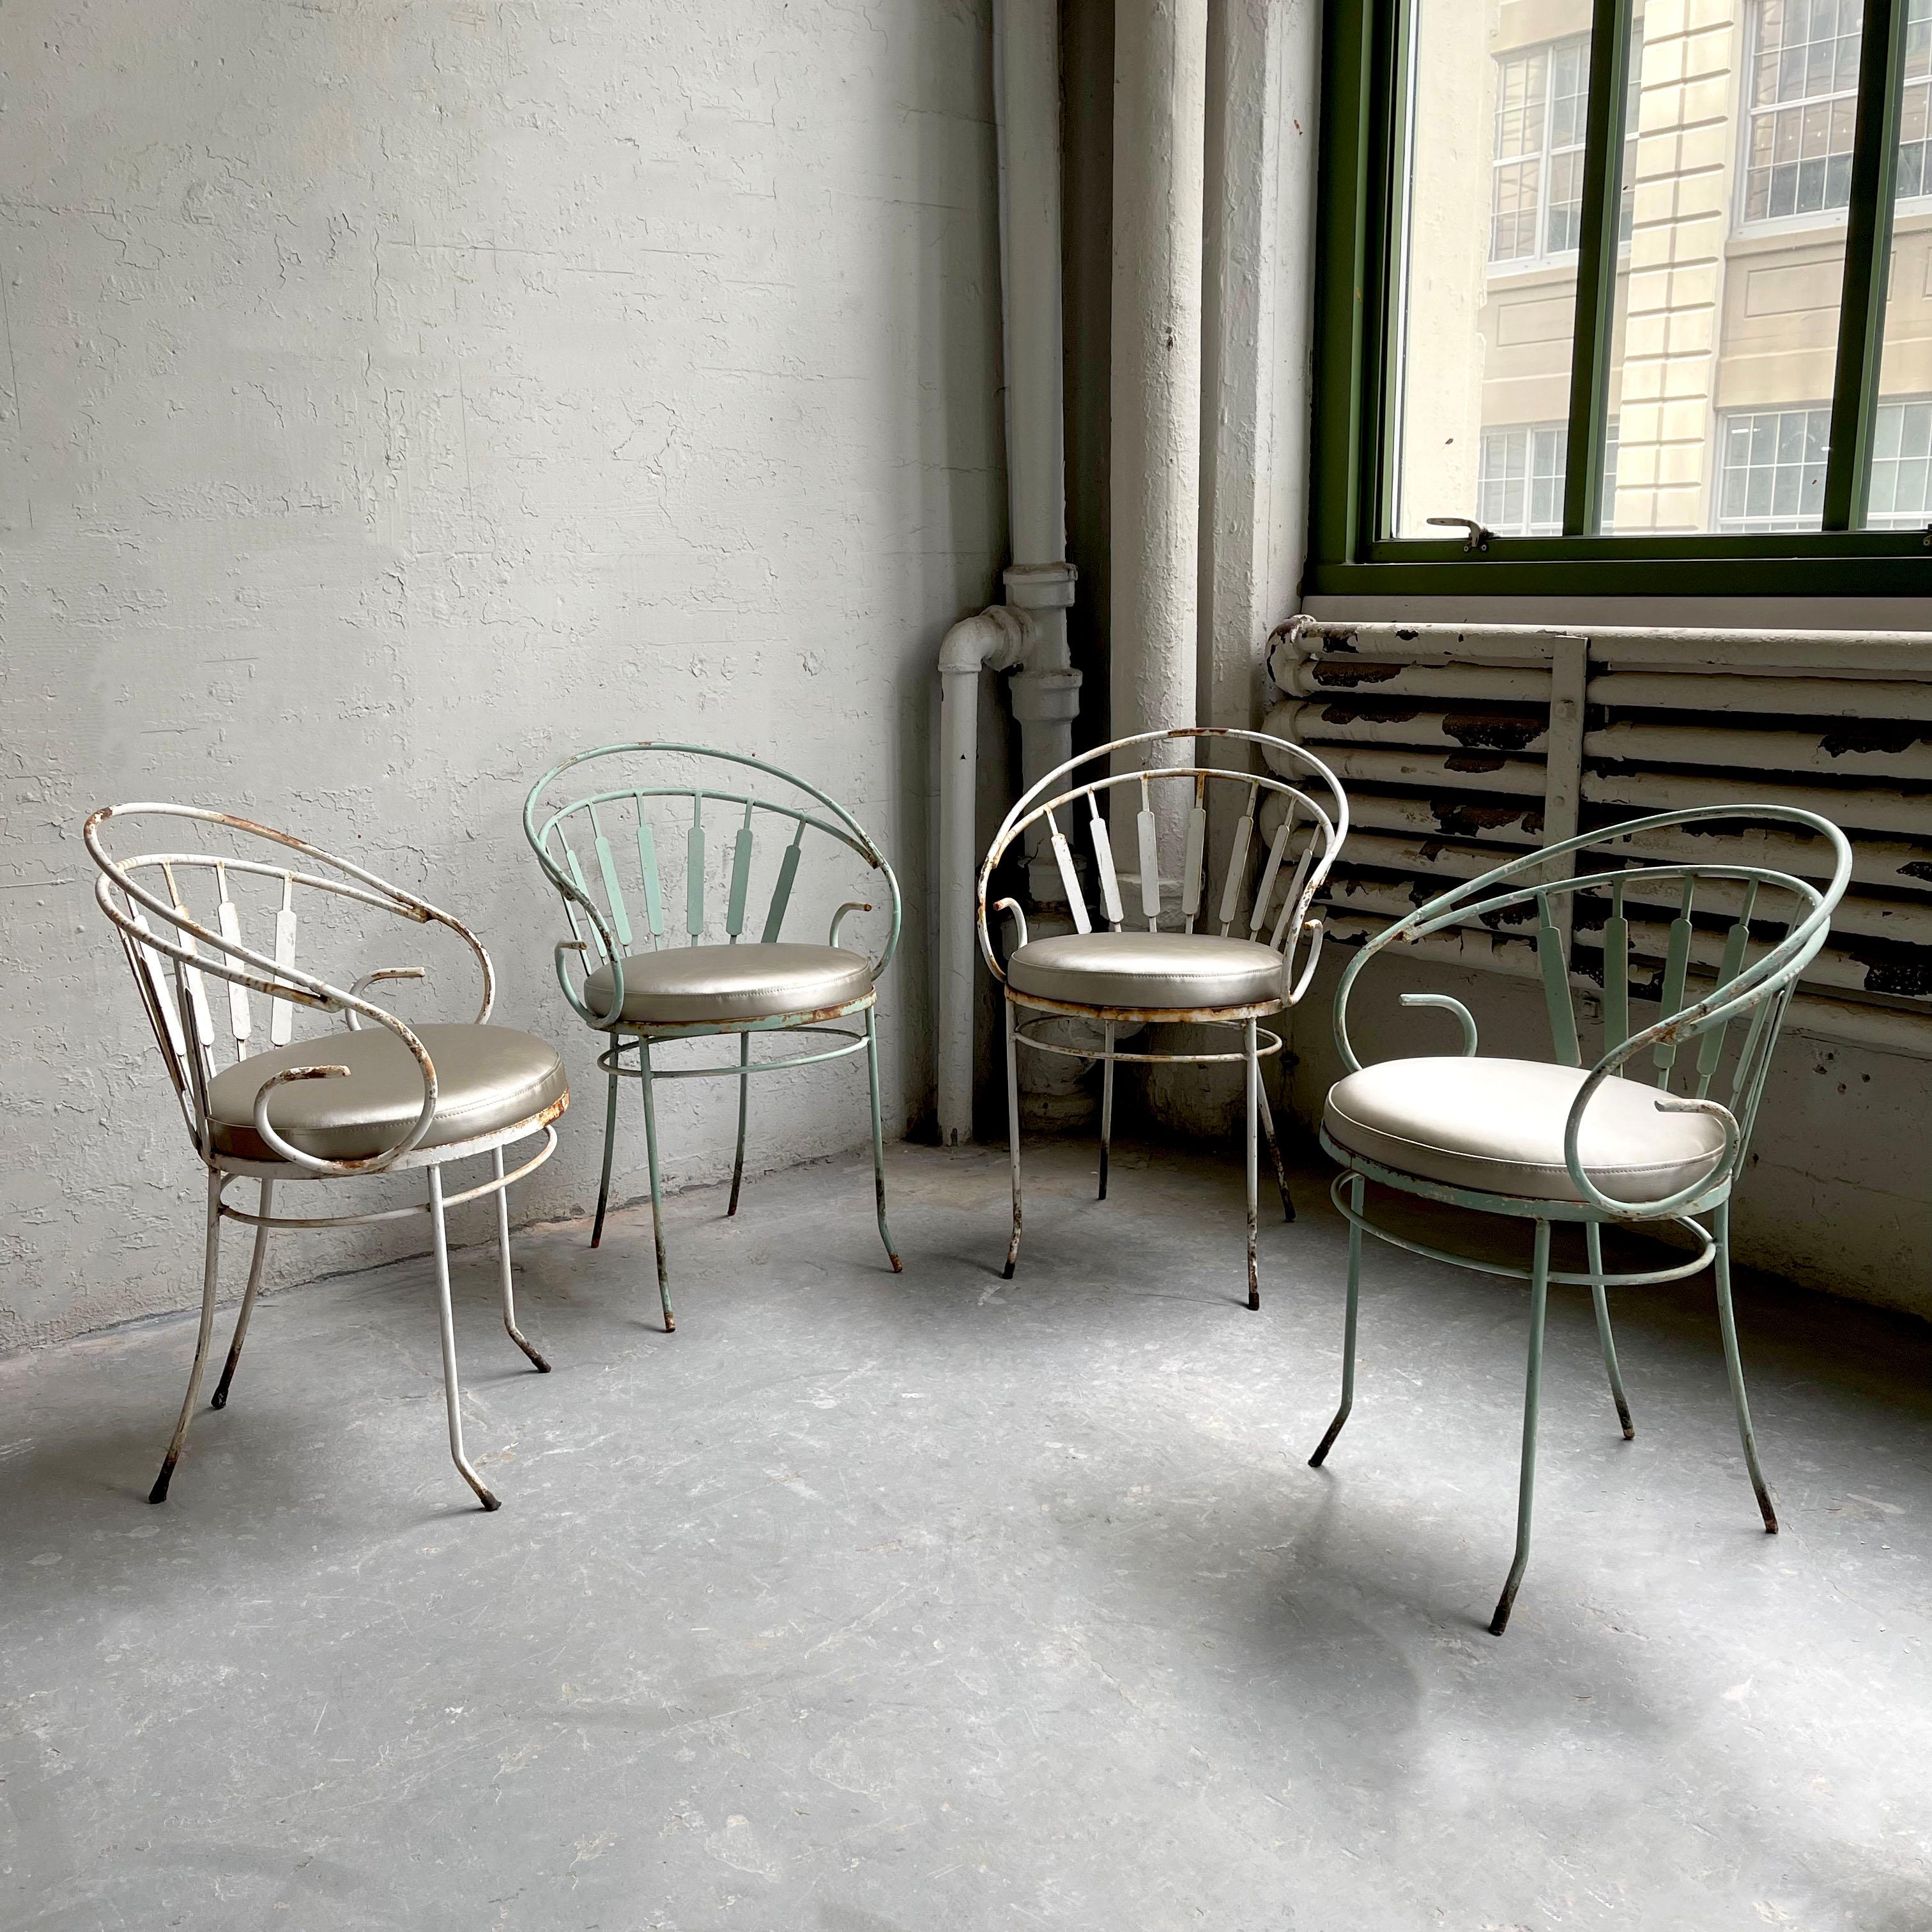 Ensemble de 4 chaises de jardin de style régence hollywoodienne, avec leur structure d'origine en fer forgé peint en vert et blanc et leurs sièges nouvellement rembourrés en vinyle argenté.